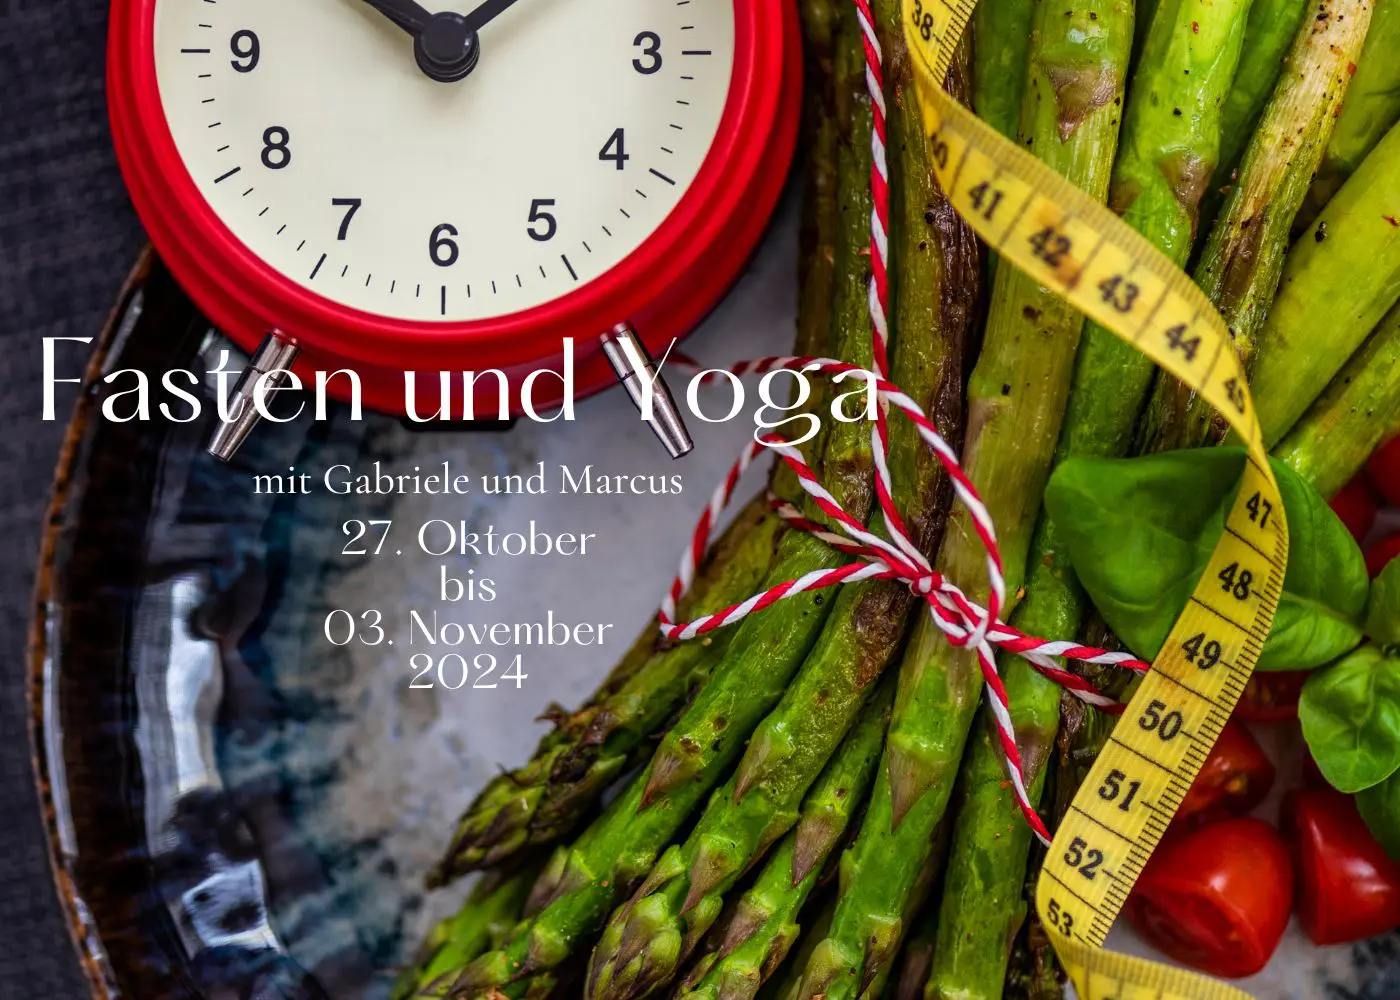 Fasten, Wandern und Yoga in Malente mit Gabriele und Marcus im Oktober 27.10 – 03.11 2024